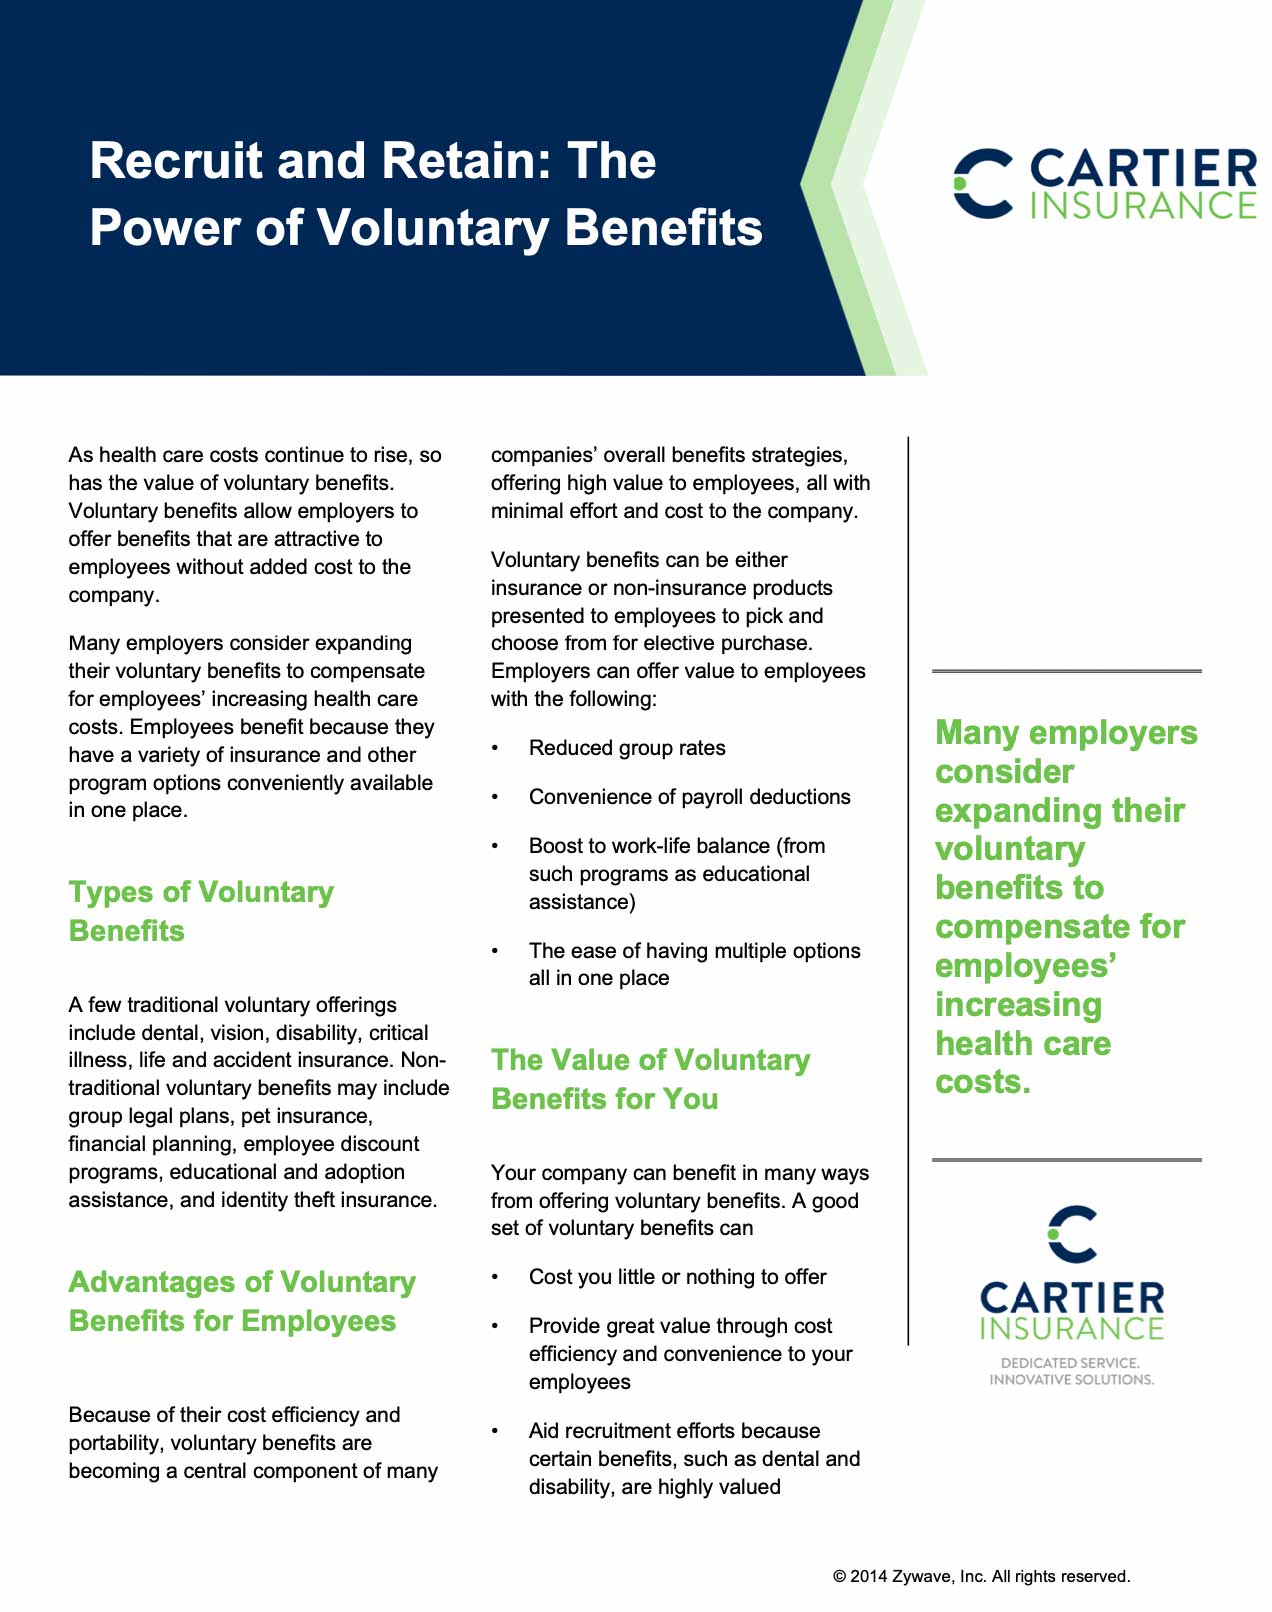 Volunteer Benefits